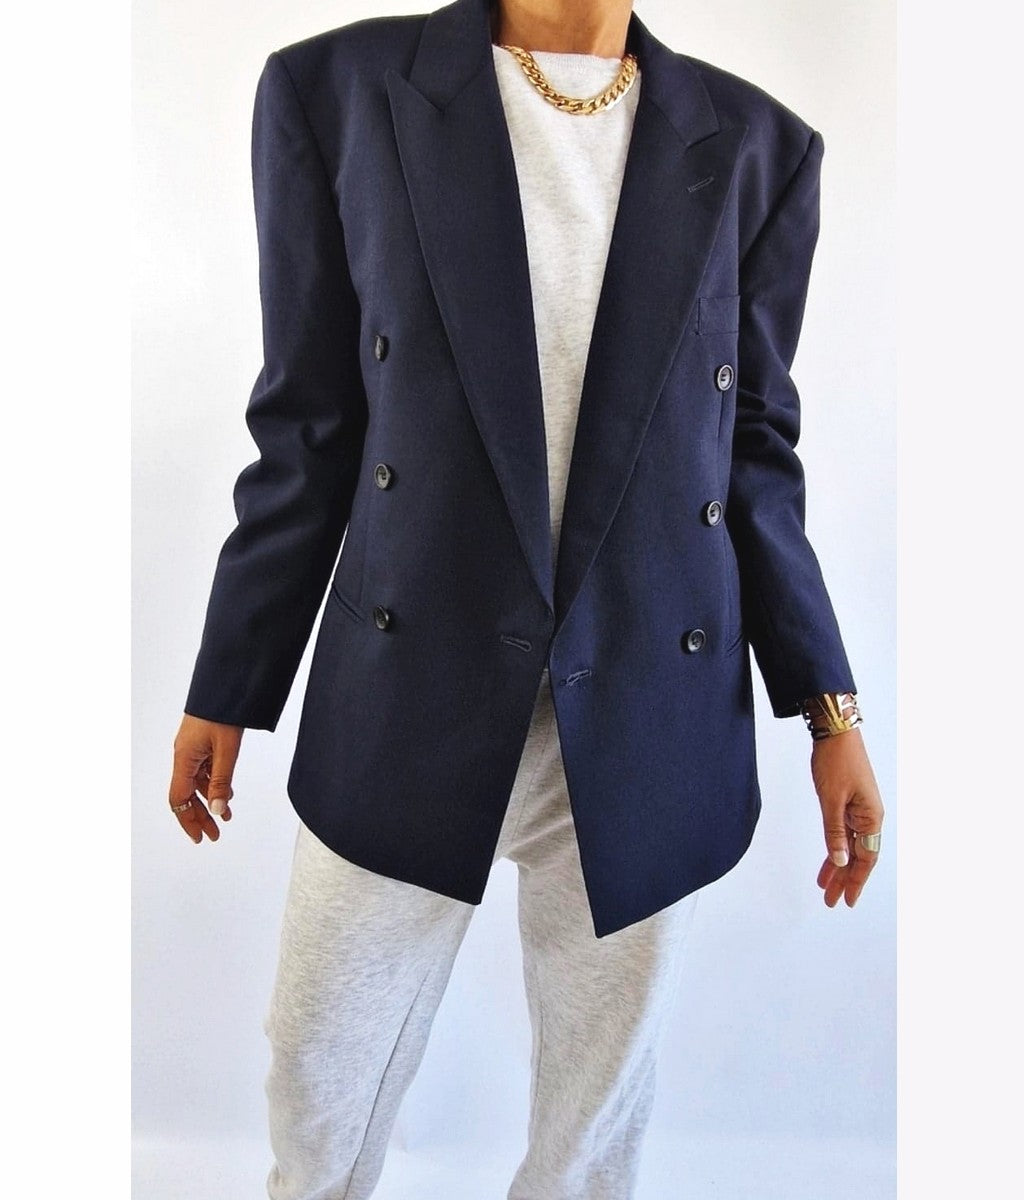 blazer vintage bleu marine pour femme taille medium large Bruxelles Belgique